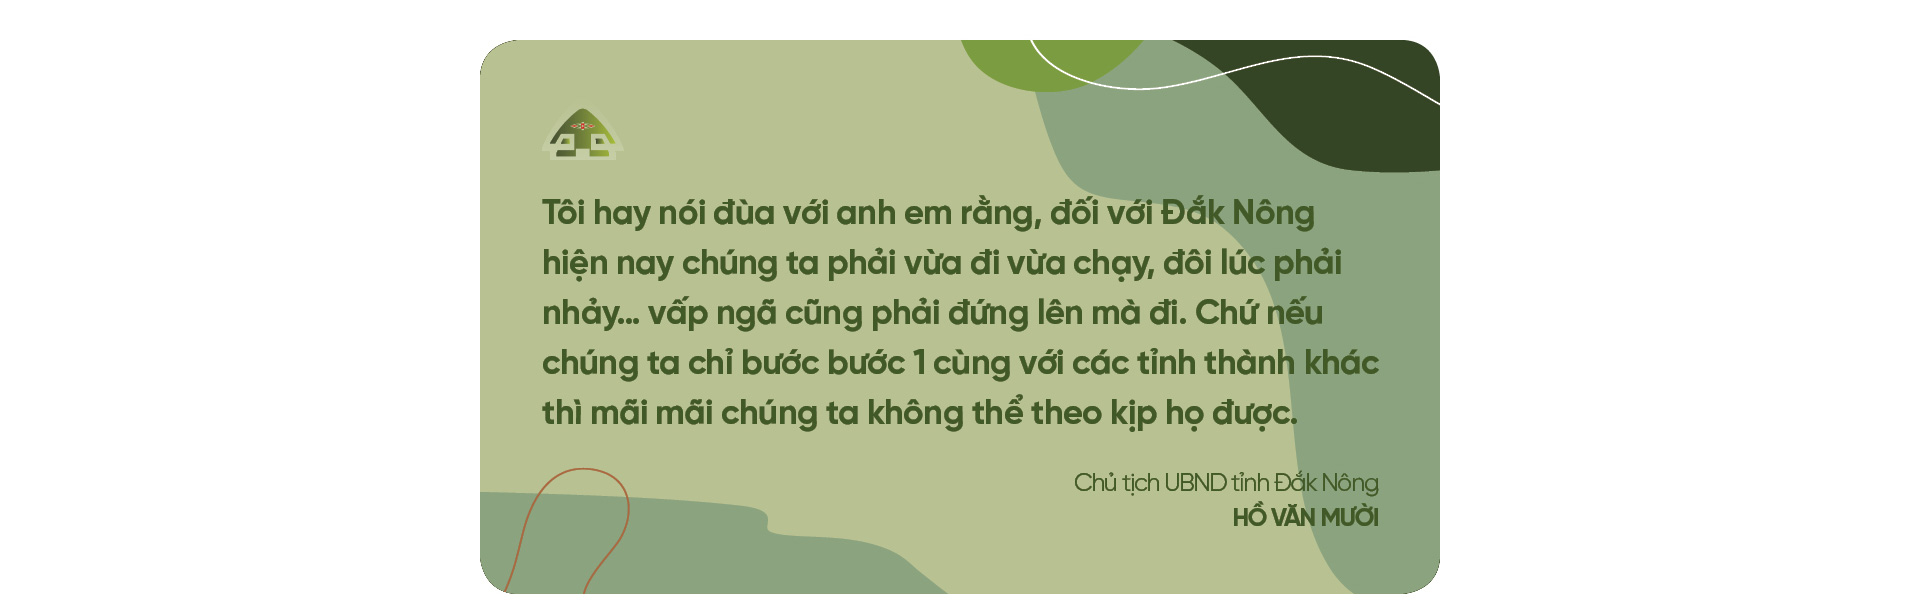 Chủ tịch UBND tỉnh Đắk Nông Hồ Văn Mười: “Đắc Nông vừa đi vừa chạy, vấp ngã cũng đứng lên” - Ảnh 11.